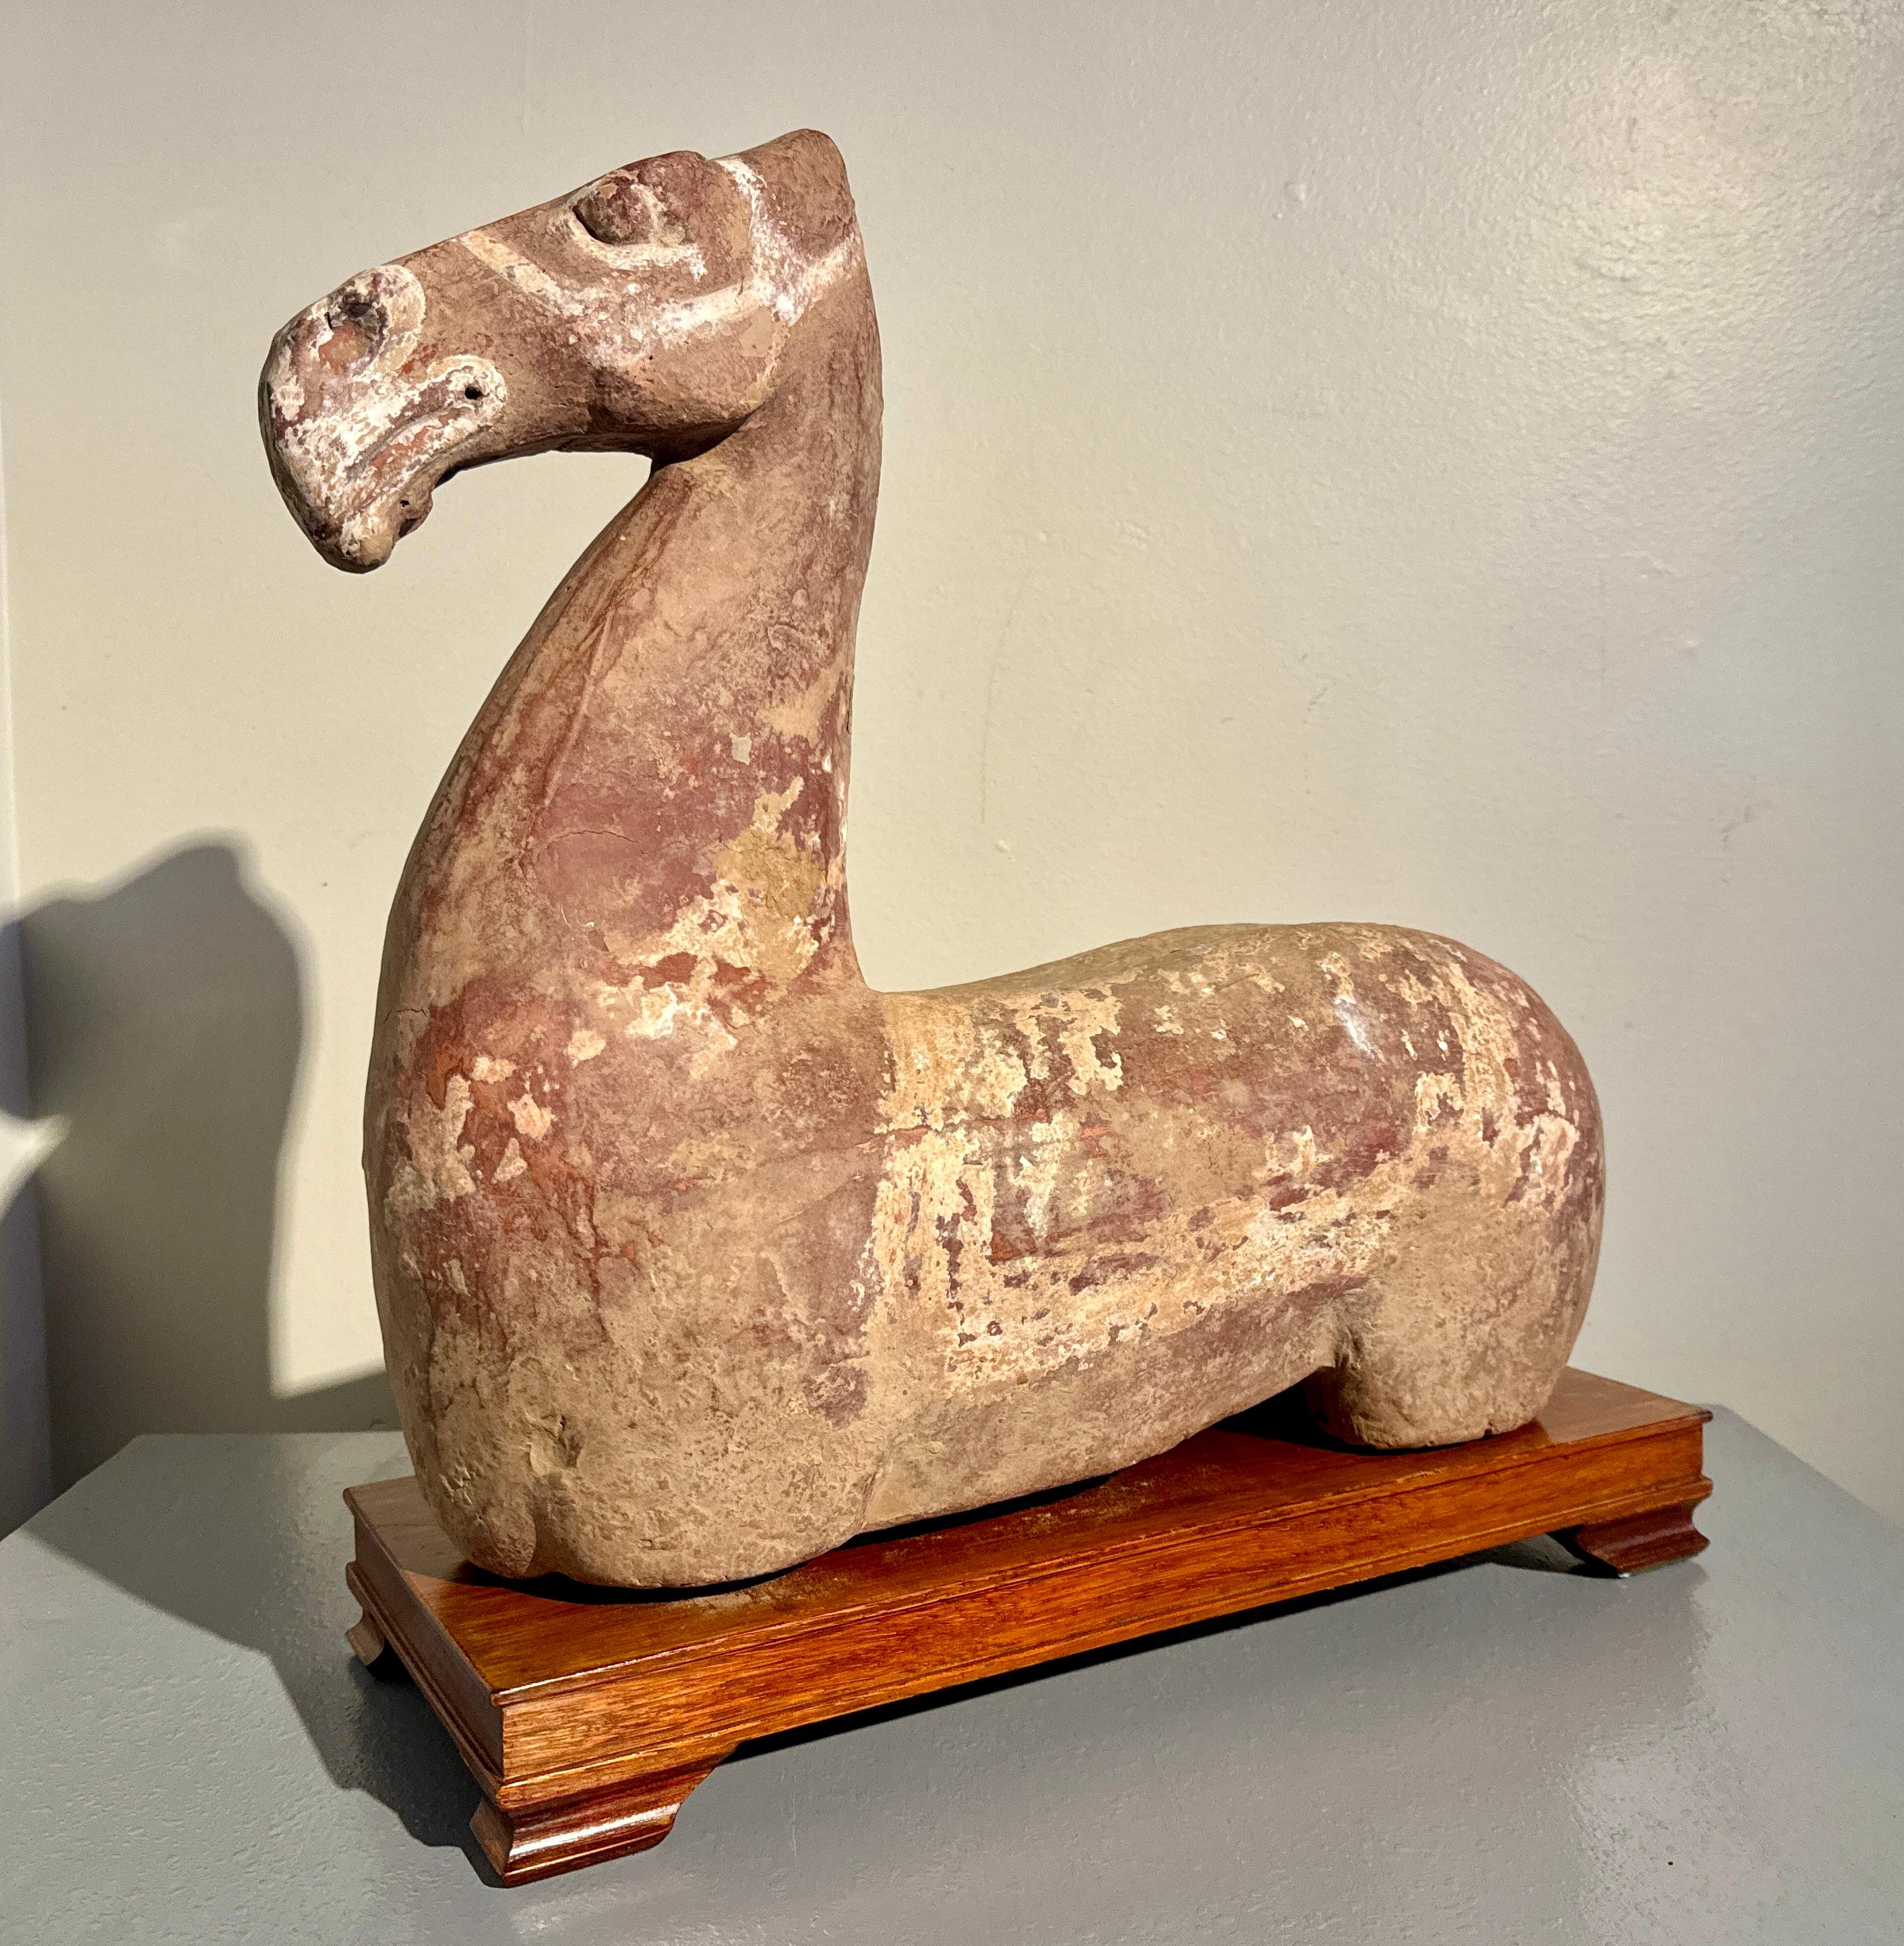 Eine große chinesische bemalte Keramikfigur eines Pferdetorsos, Han-Dynastie (206 v. Chr. bis 220 n. Chr.).

Ein ungewöhnlich großer chinesischer Pferdetorso aus der Han-Dynastie, der auch als liegendes Pferd bezeichnet wird. Er ist aus gebrannter